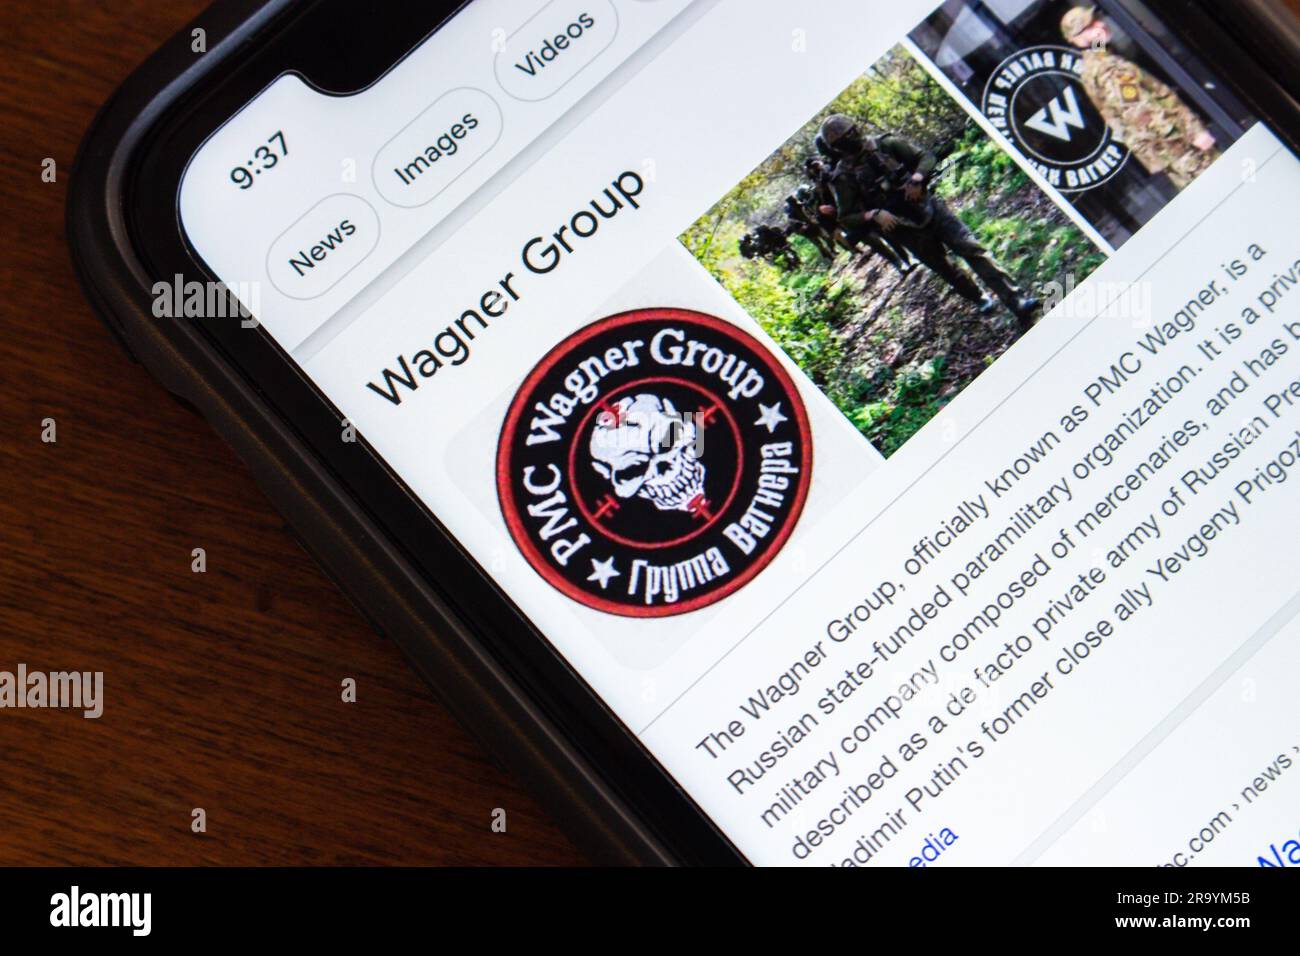 Google-Suchergebnis der Wagner Group auf einem iPhone. Die Wagner Group ist eine staatlich finanzierte russische paramilitärische Organisation (PMC Wagner) Stockfoto